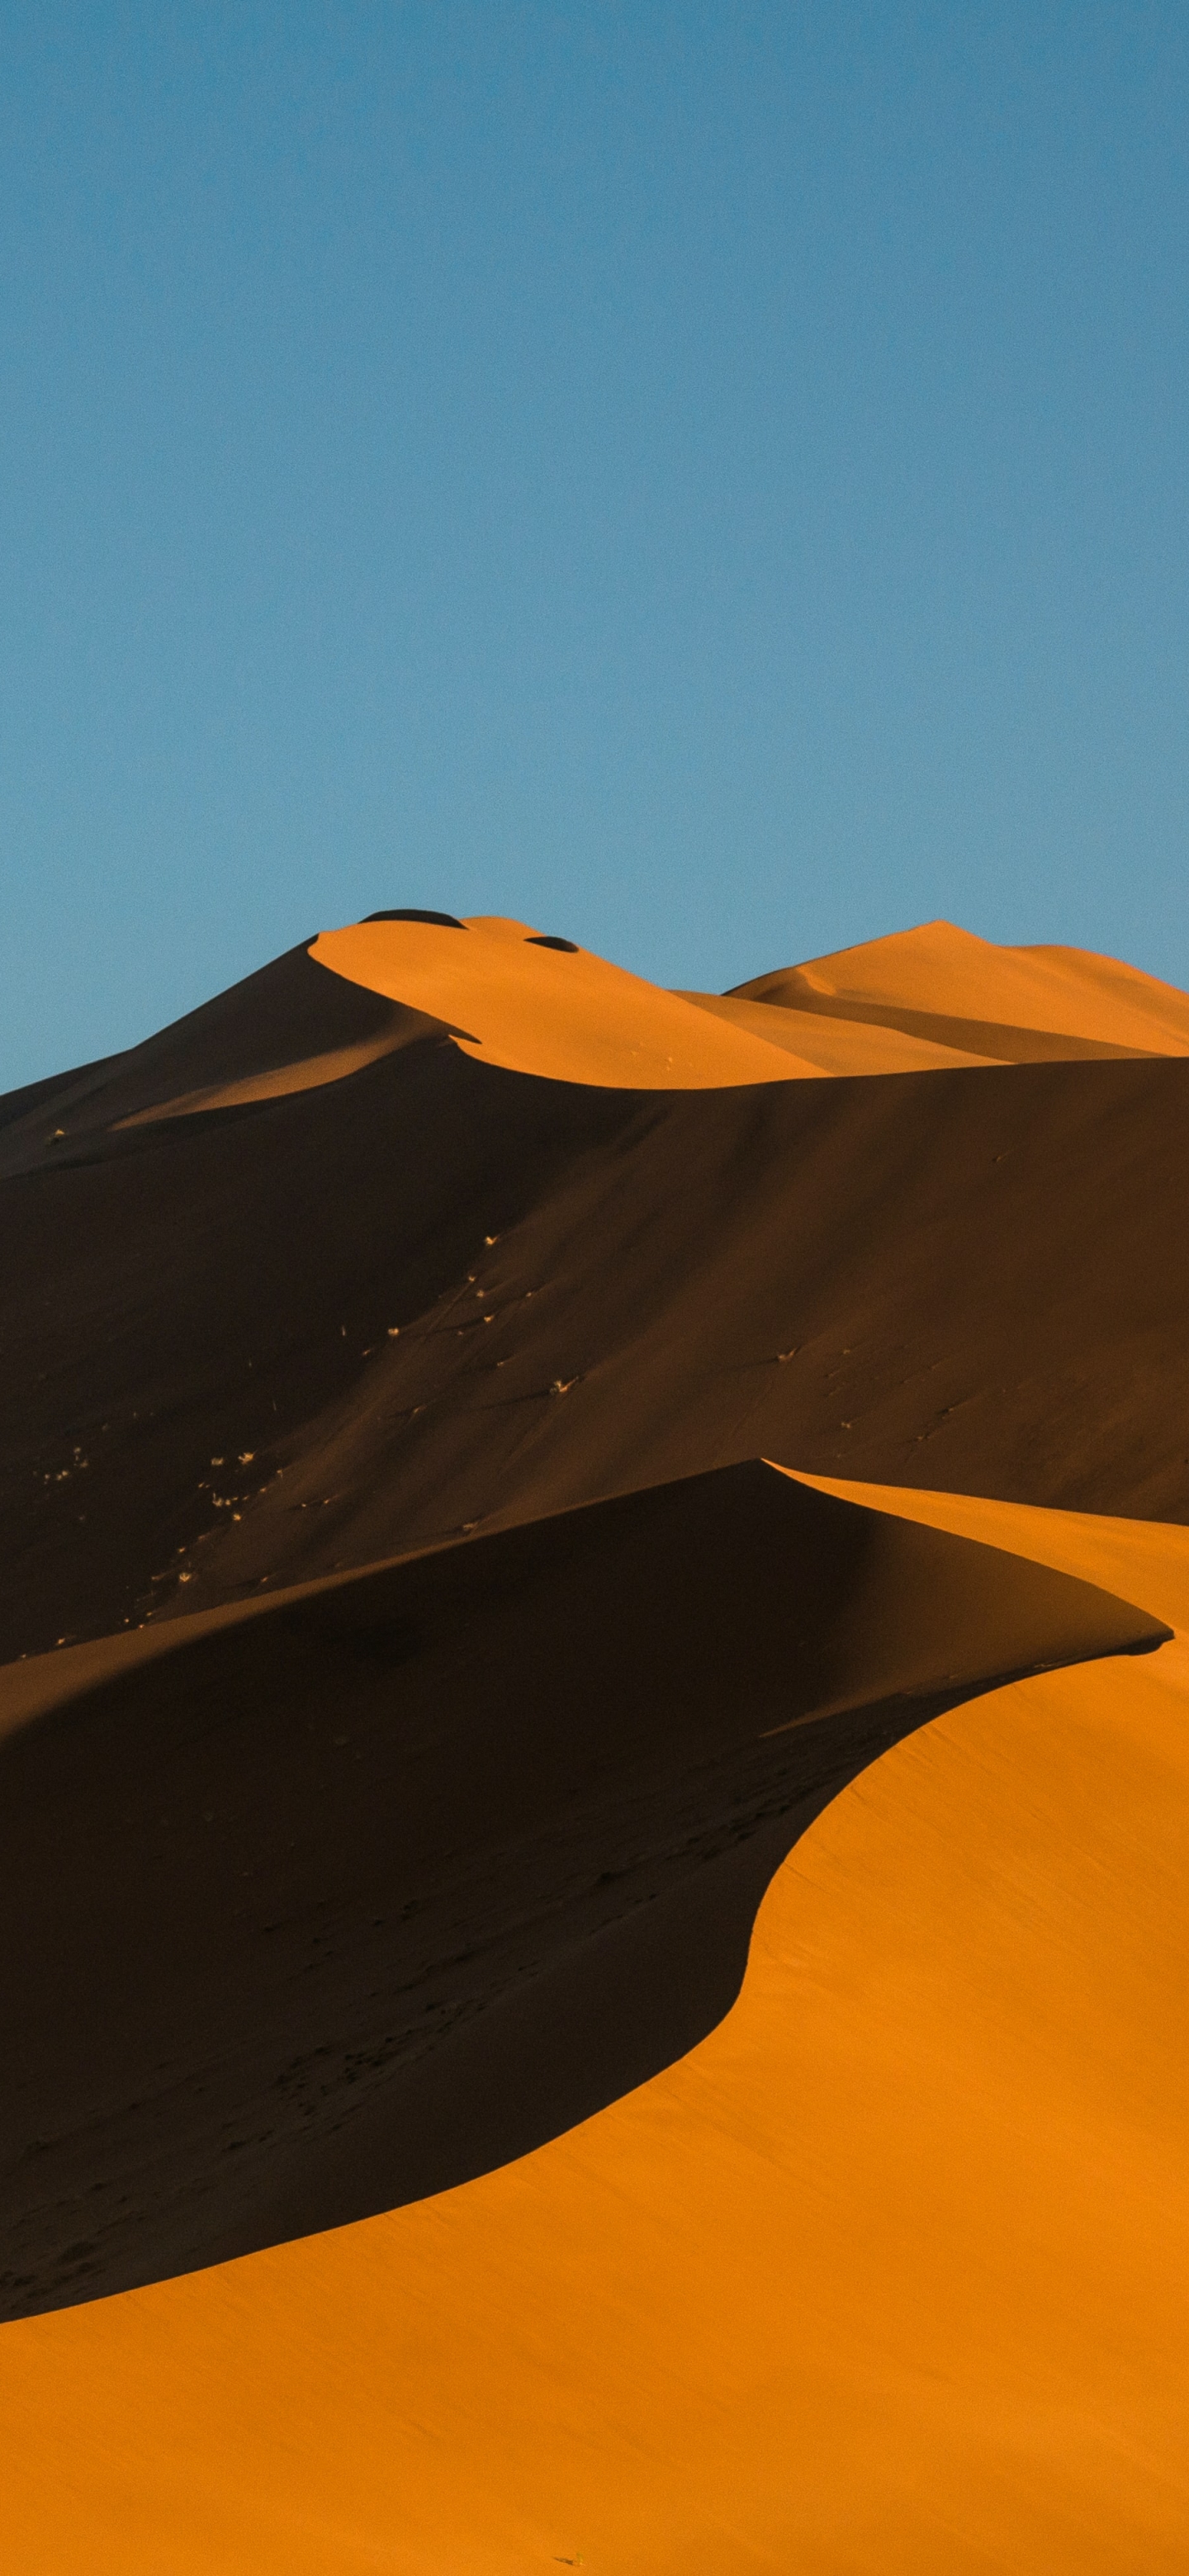 Скачать обои Пустыня Намиб на телефон бесплатно